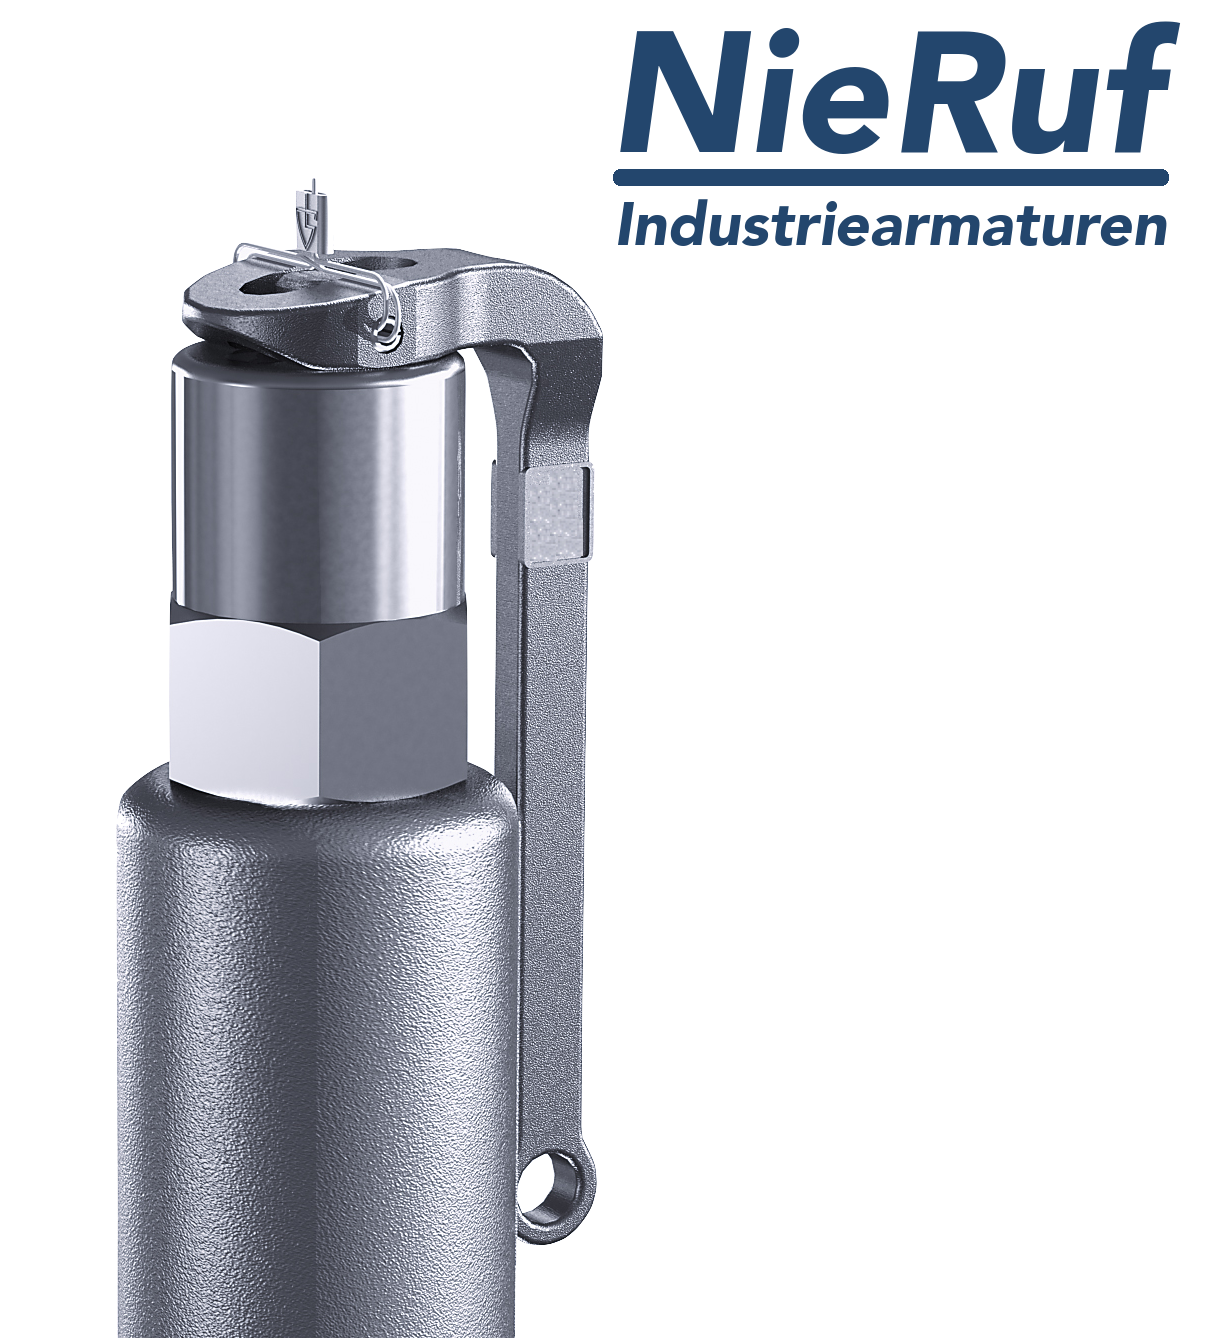 valvola di sicurezza 1" x 1 1/2" F SV05 fluidi liquidi neutri, acciaio inox NBR, con leva